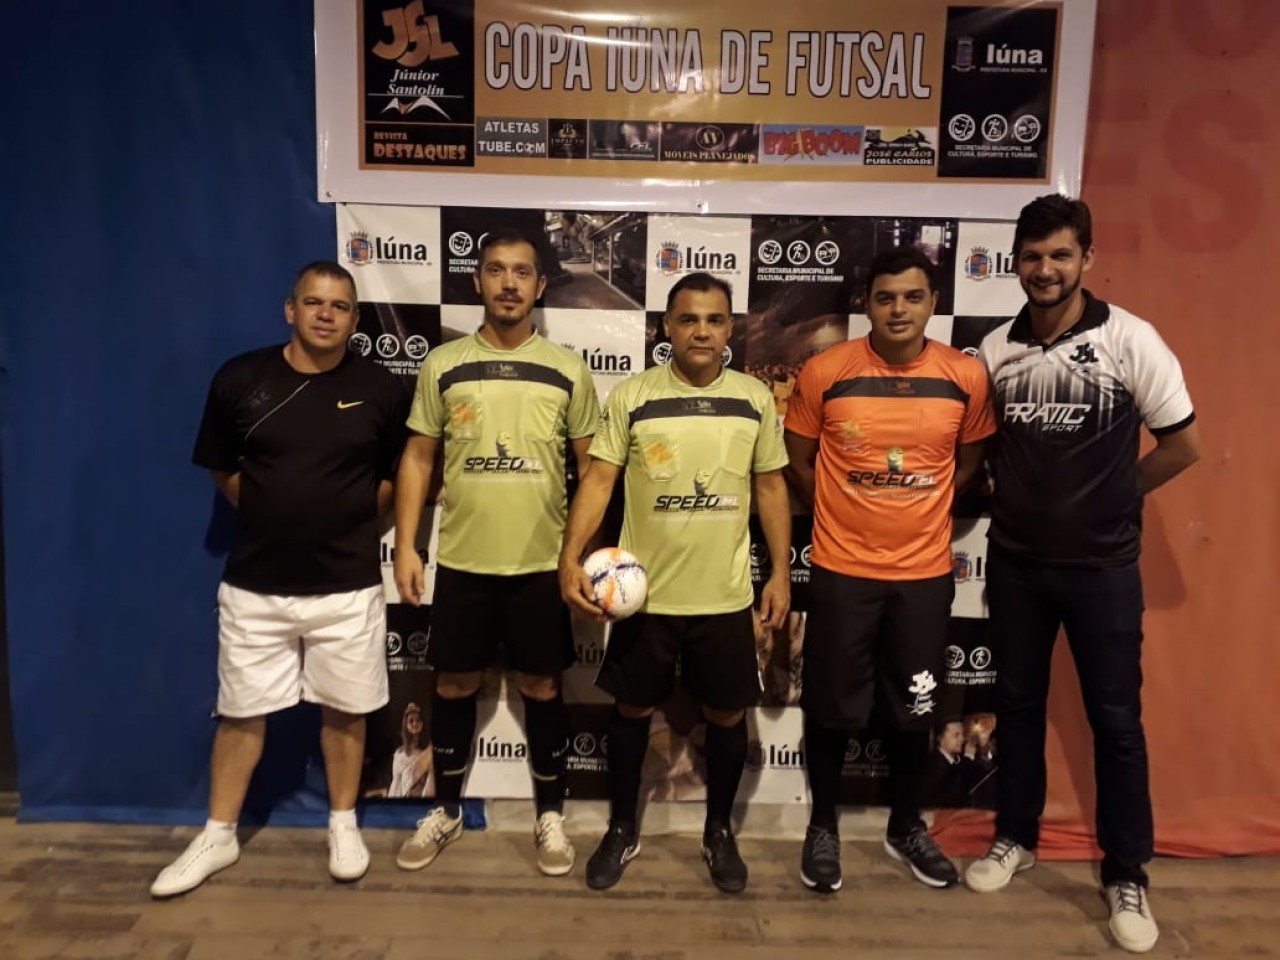 Começa a Copa Iúna de Futsal 2019